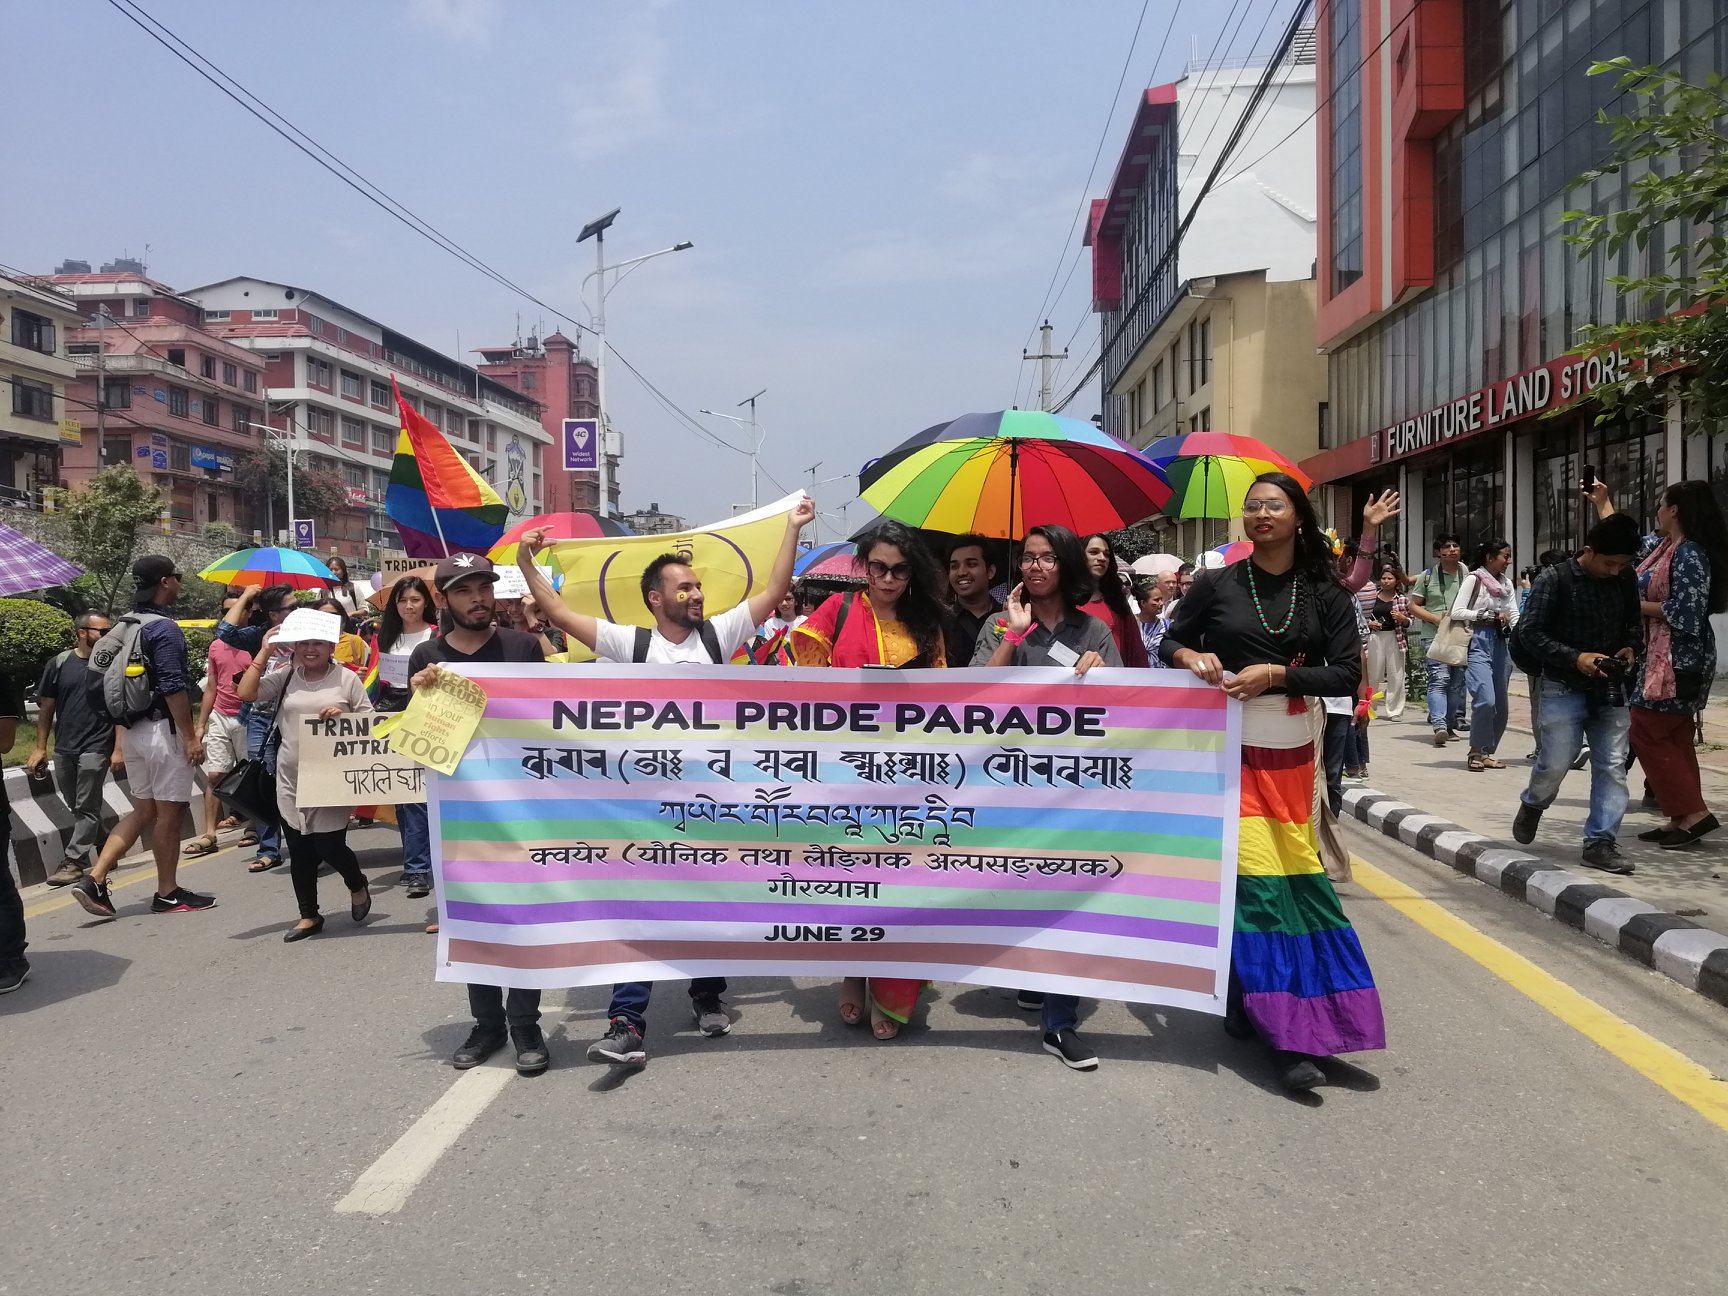 Nepal Pride Parade 2021 to be celebrated virtually